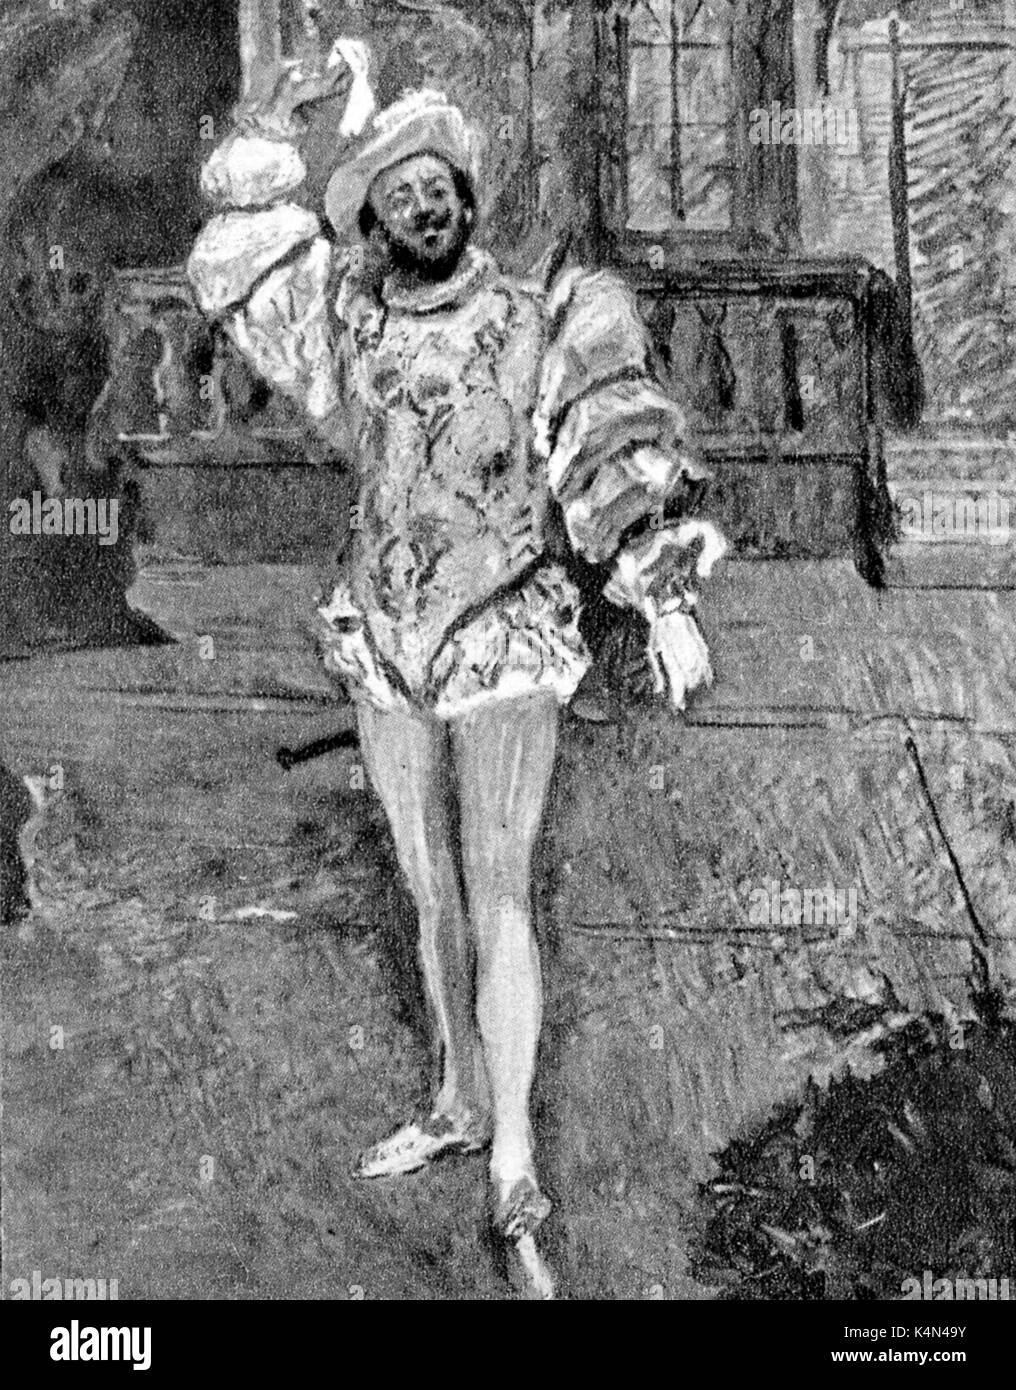 Francisco d'Andrade als Don Giovanni in Mozarts Oper. Von Max Slevogt. Portugiesischen Bariton 1859-1921. Stockfoto